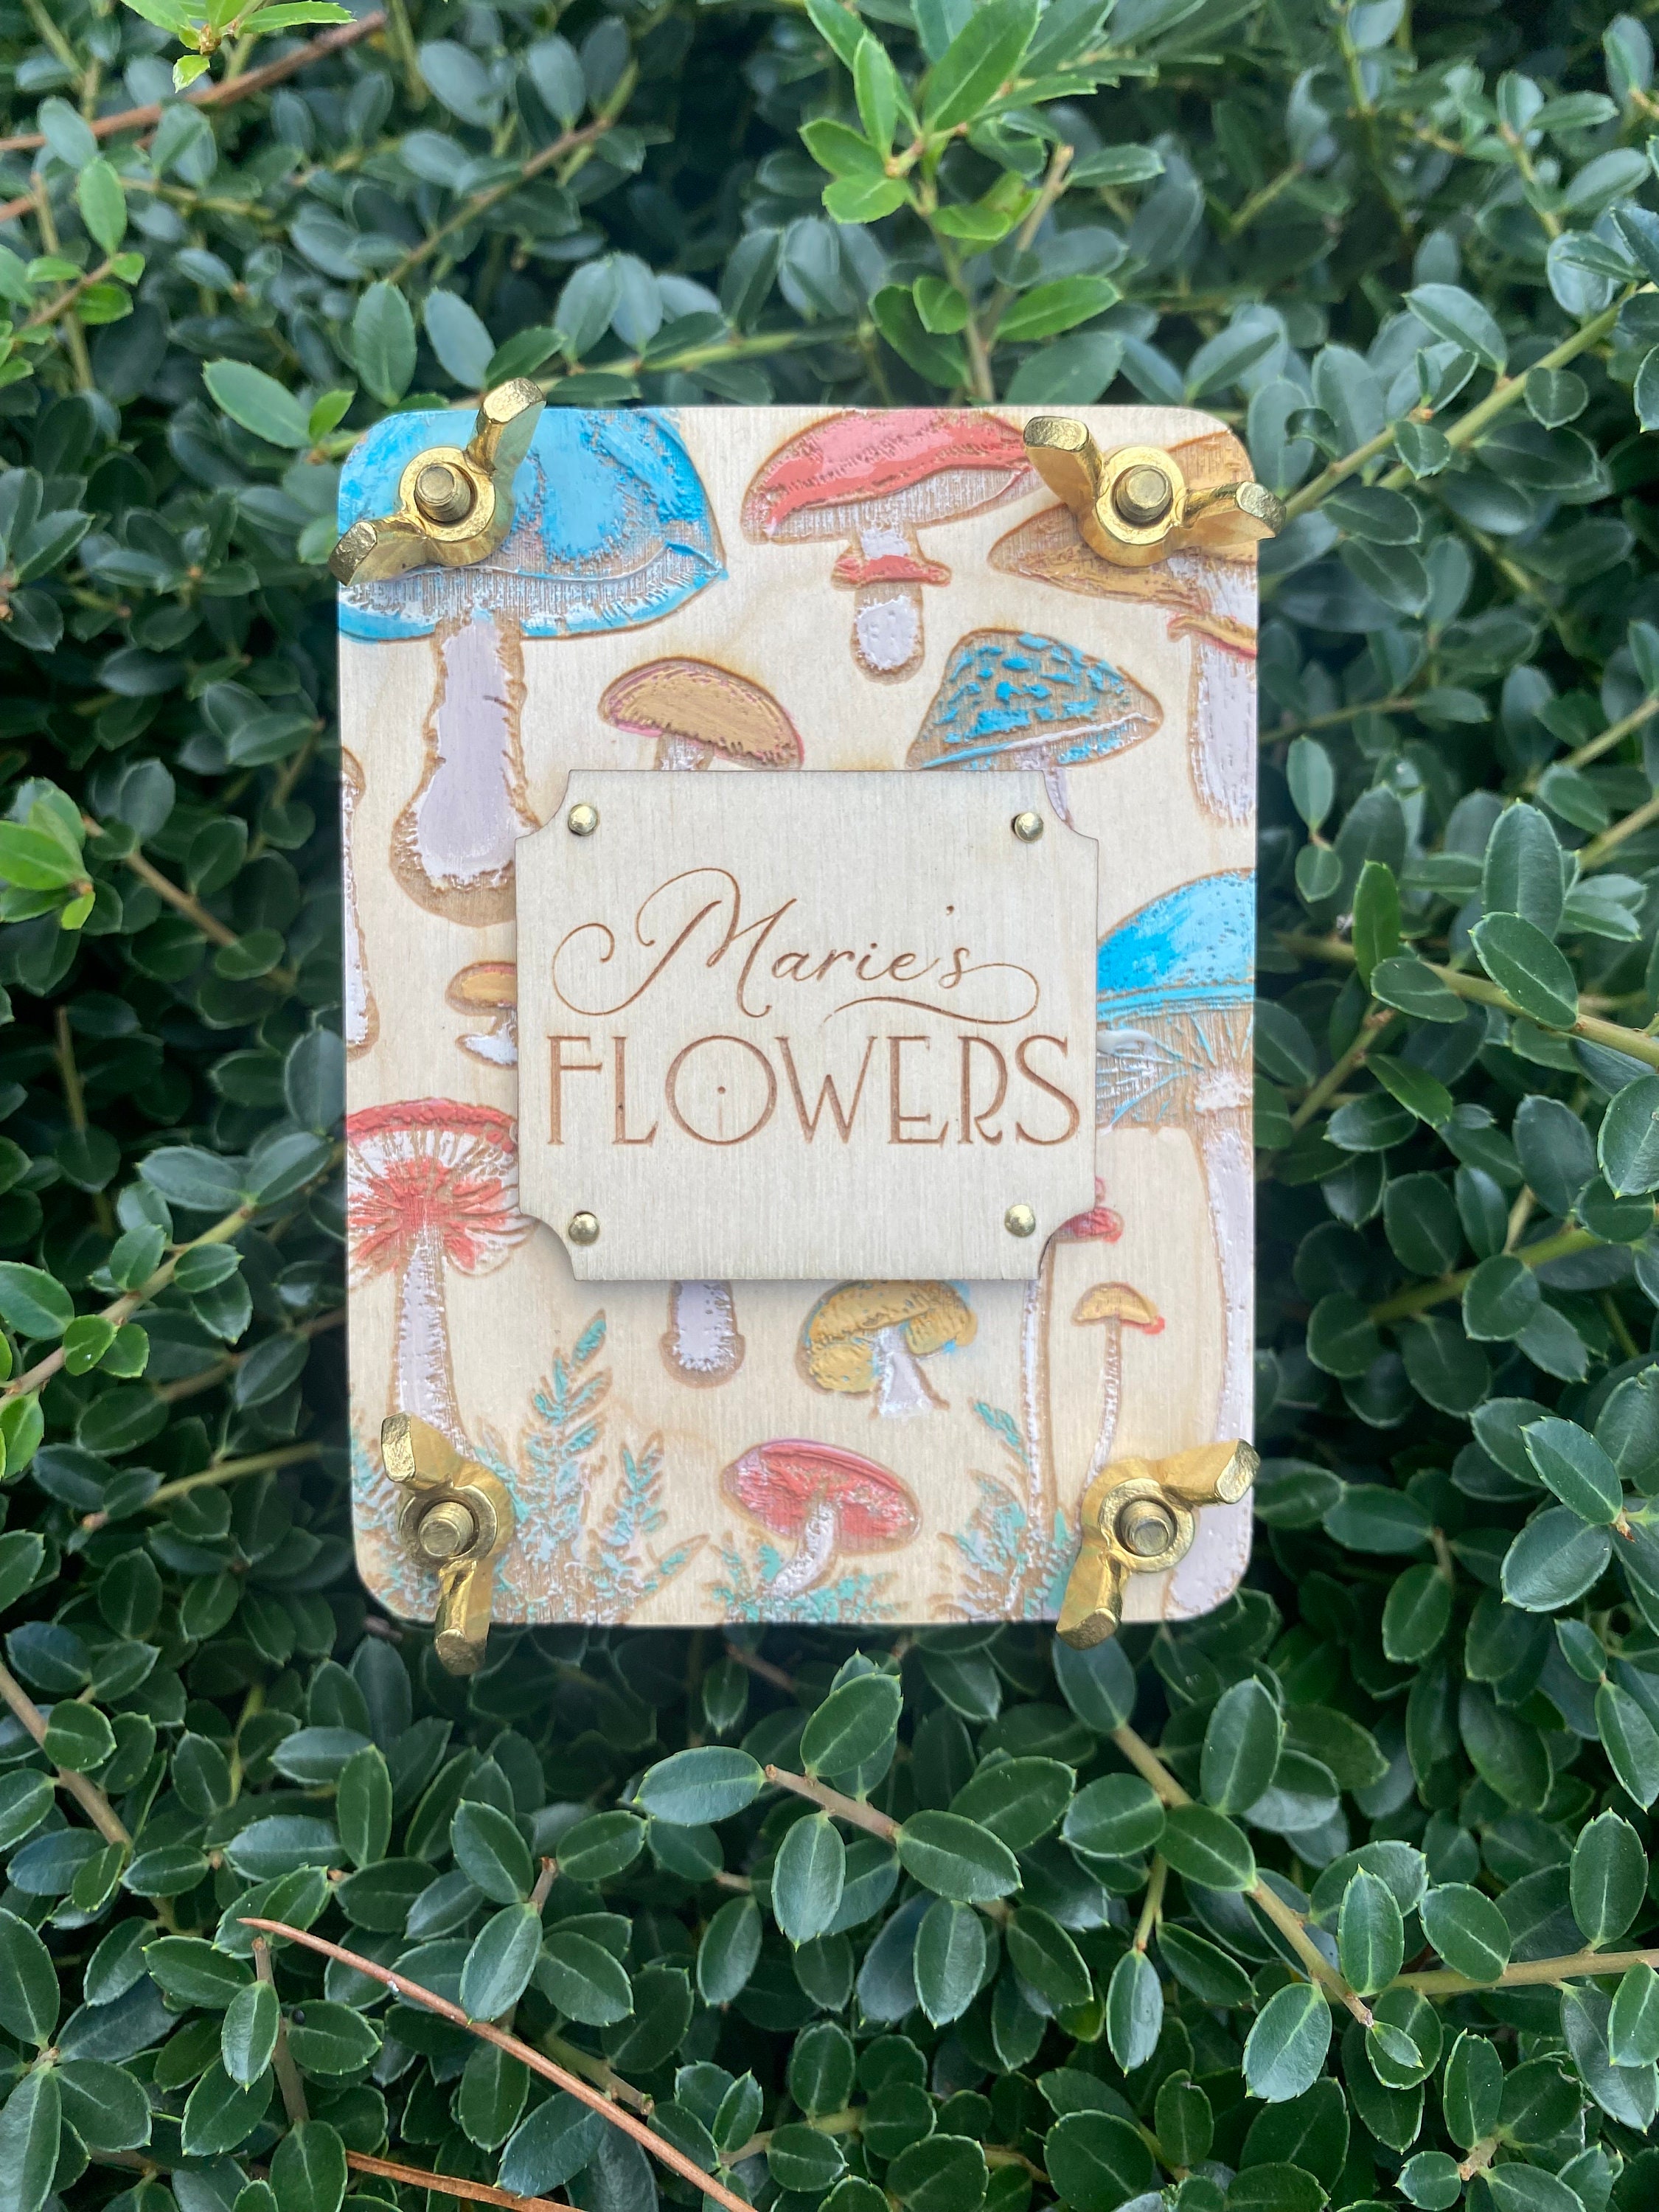 Wooden Sunflower Flower Press Kit/ Personalized Botanical Flower Pressing  Kit / Gift for Her / Dry Flower Art / Kids Nature Activity / 